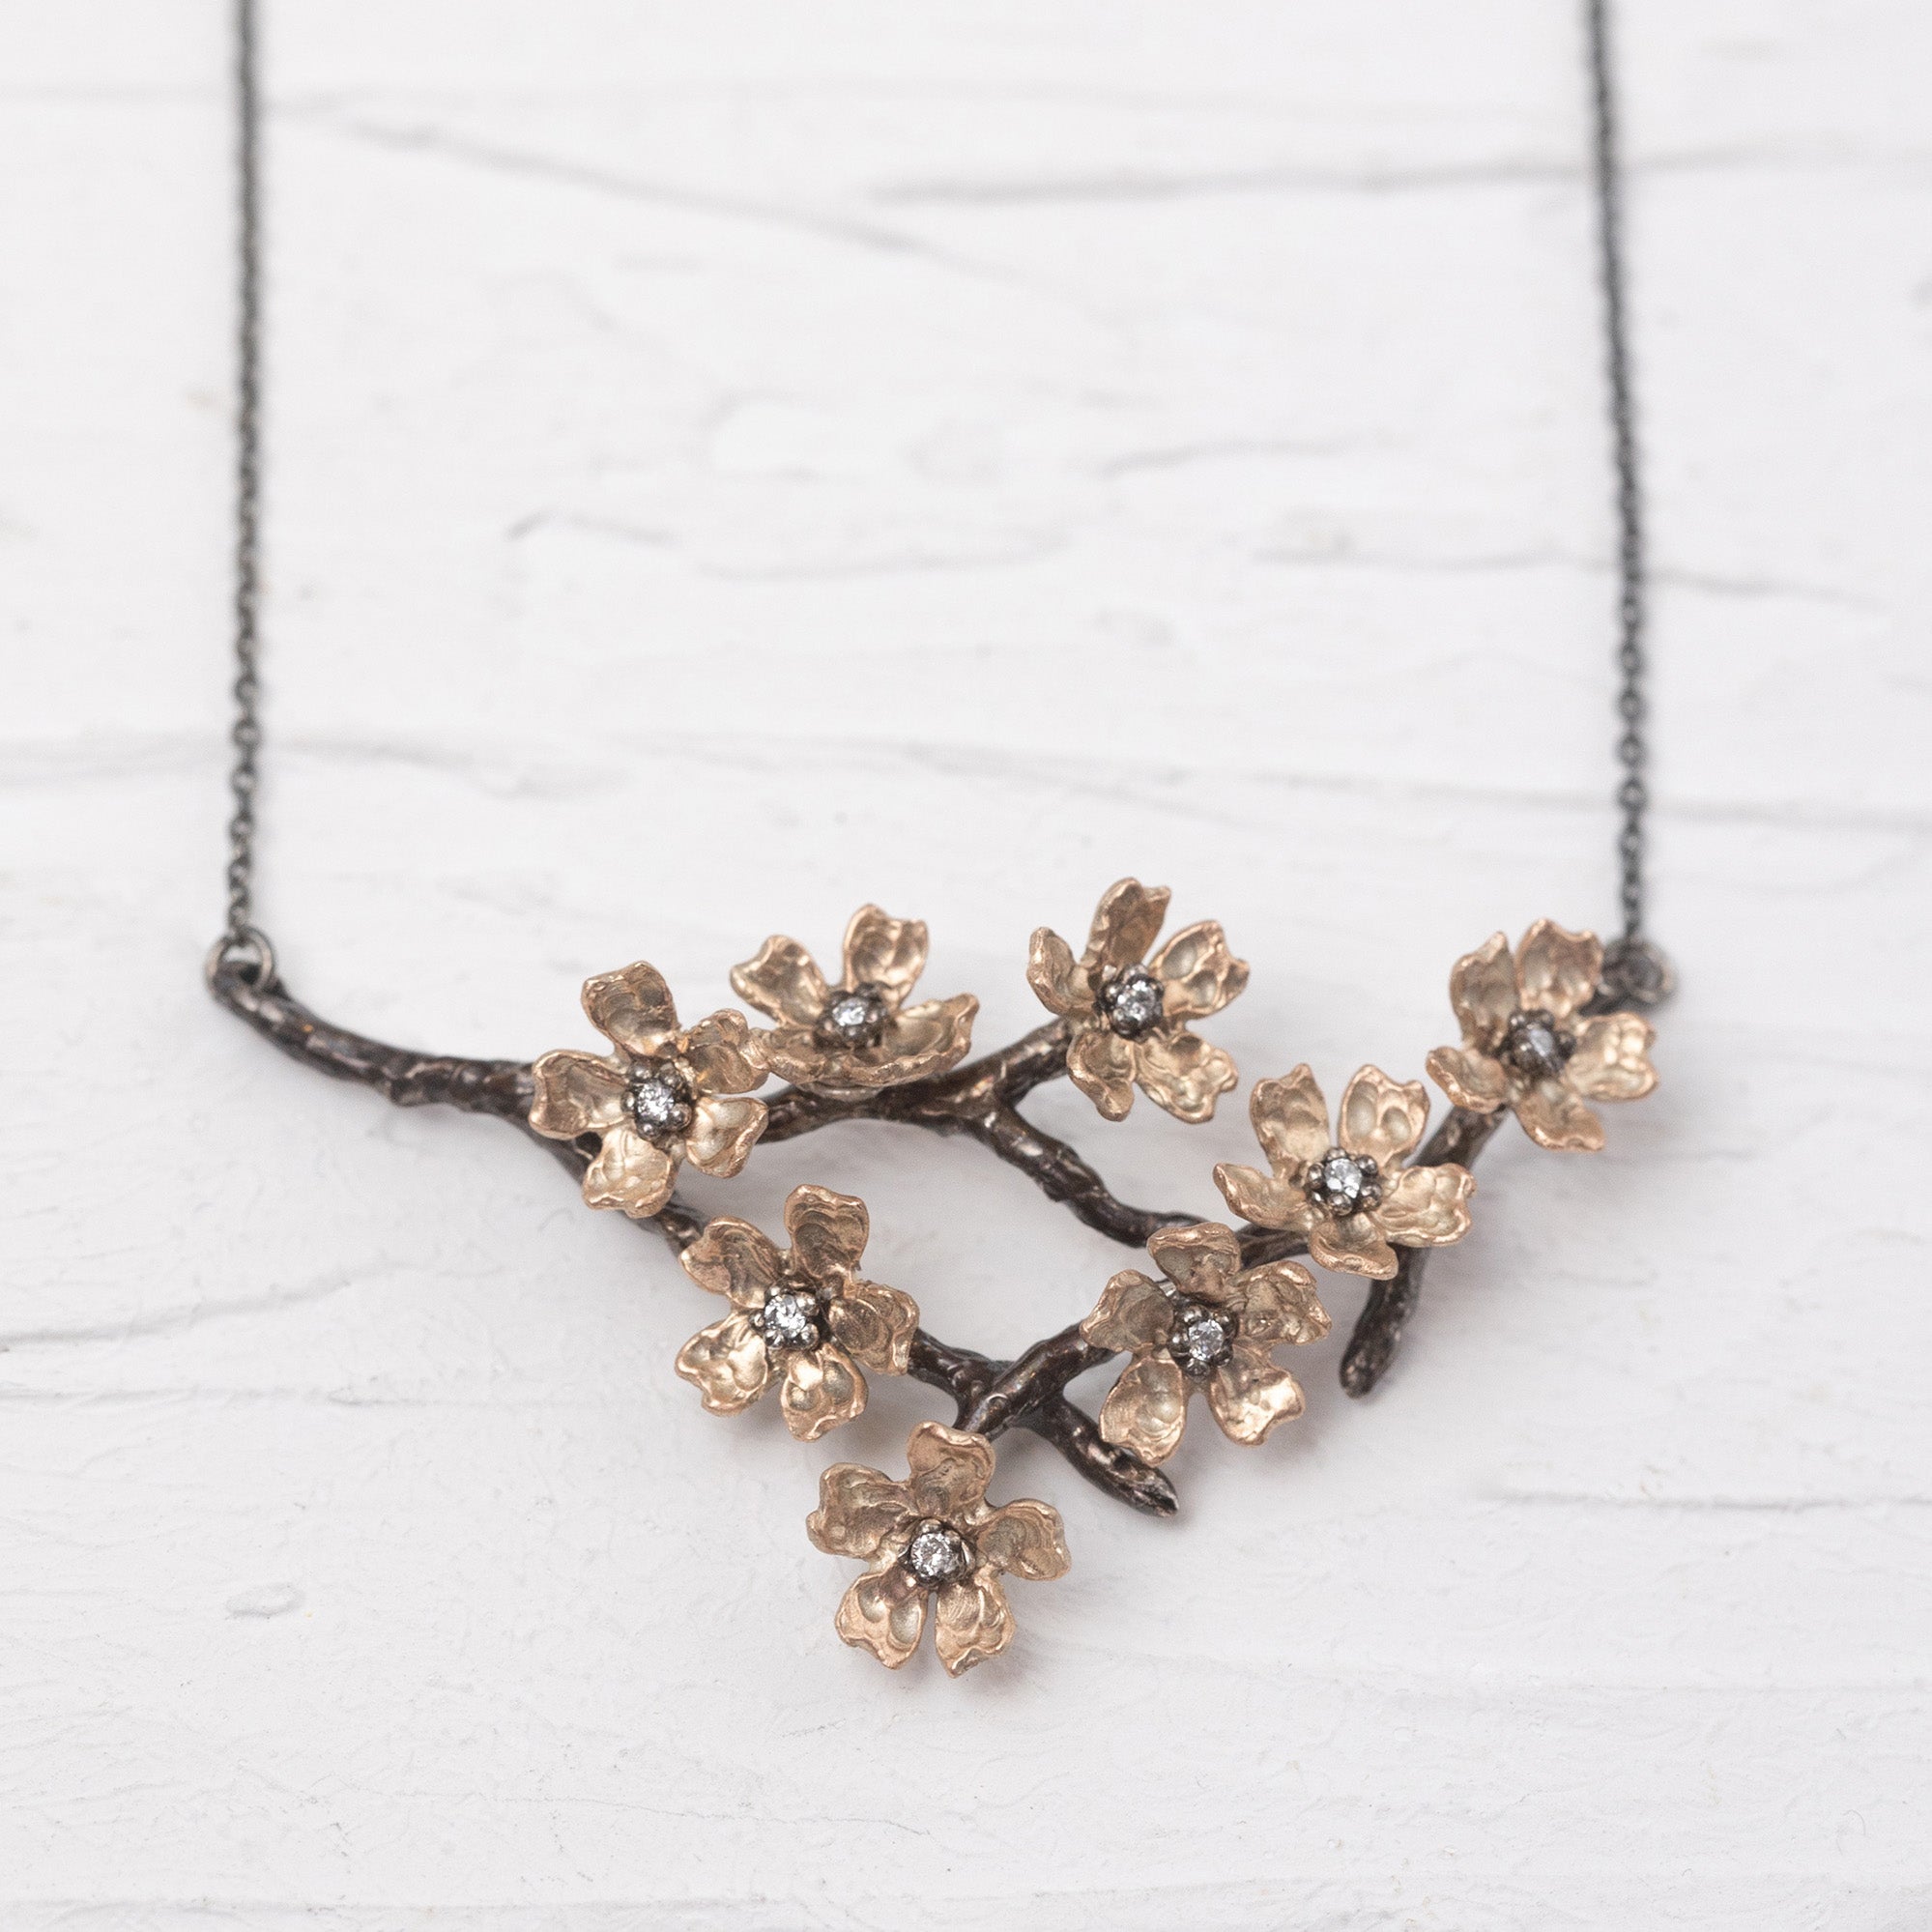 8 Flower Sakura Branch Necklace